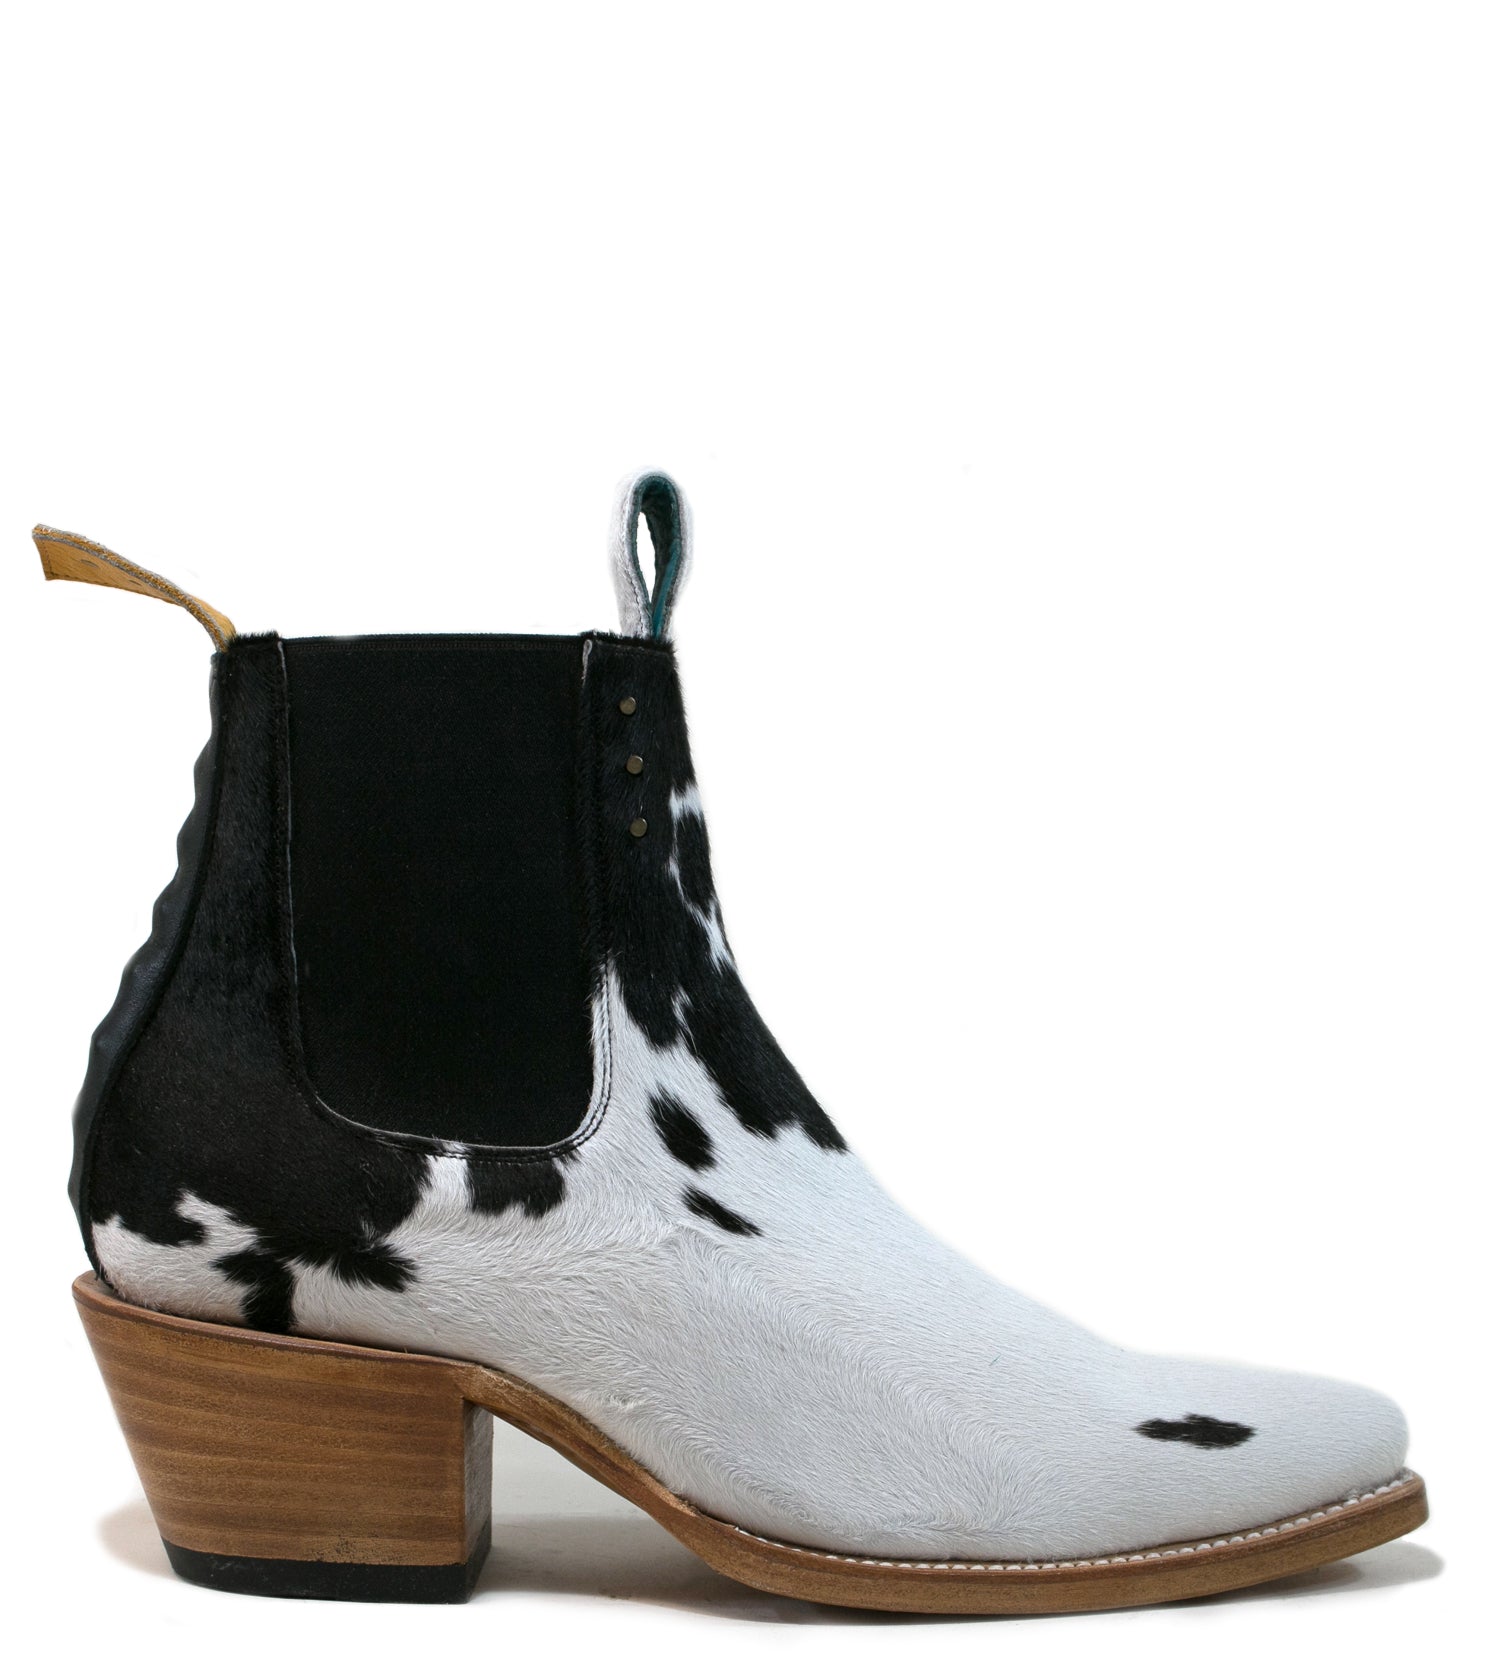 No.1001 FREEWAY chelsea boot Black + White Fur WOMEN - pskaufmanfootwear